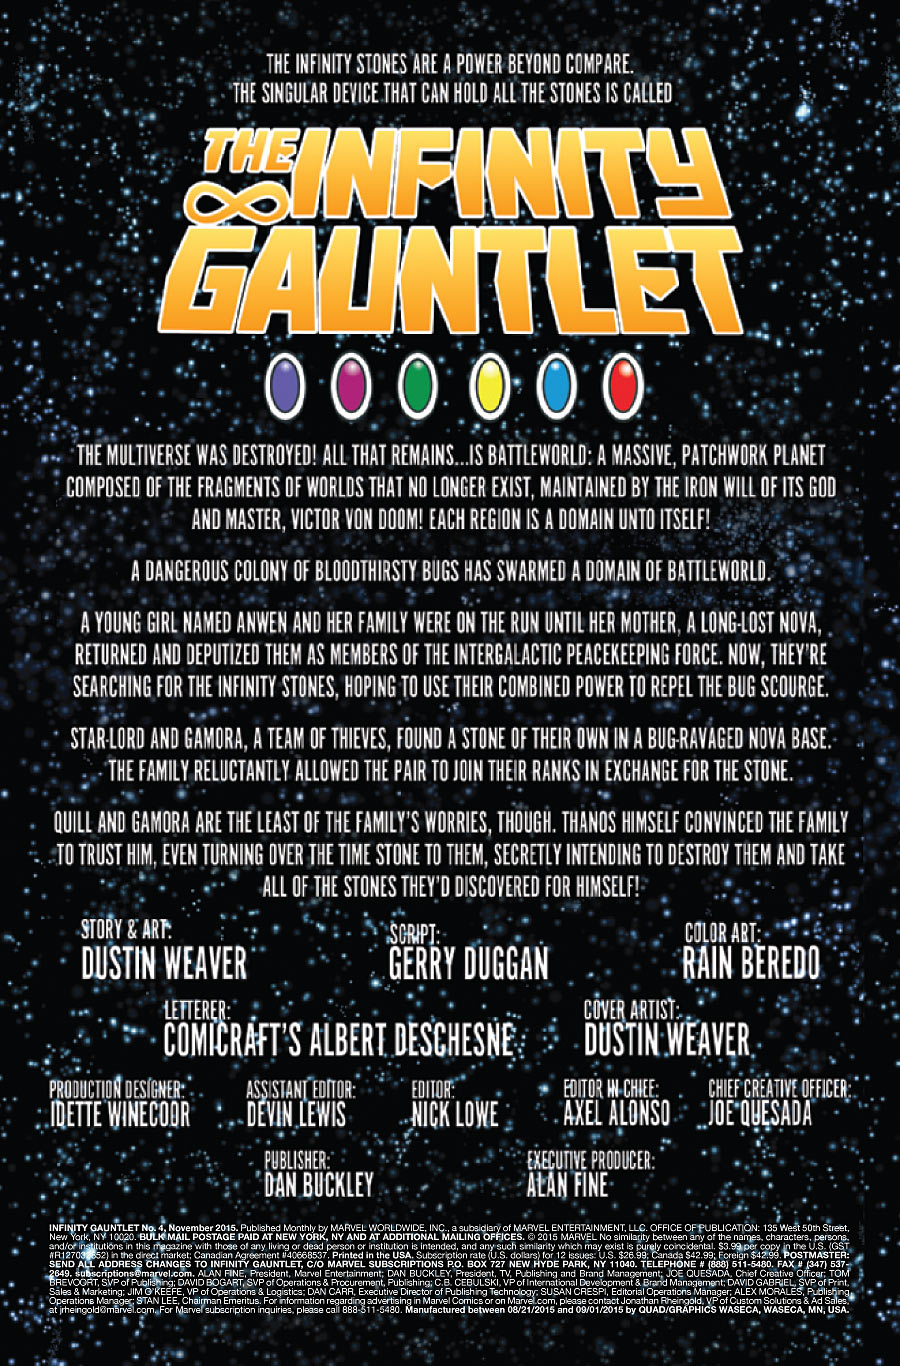 The Infinity Gauntlet #4